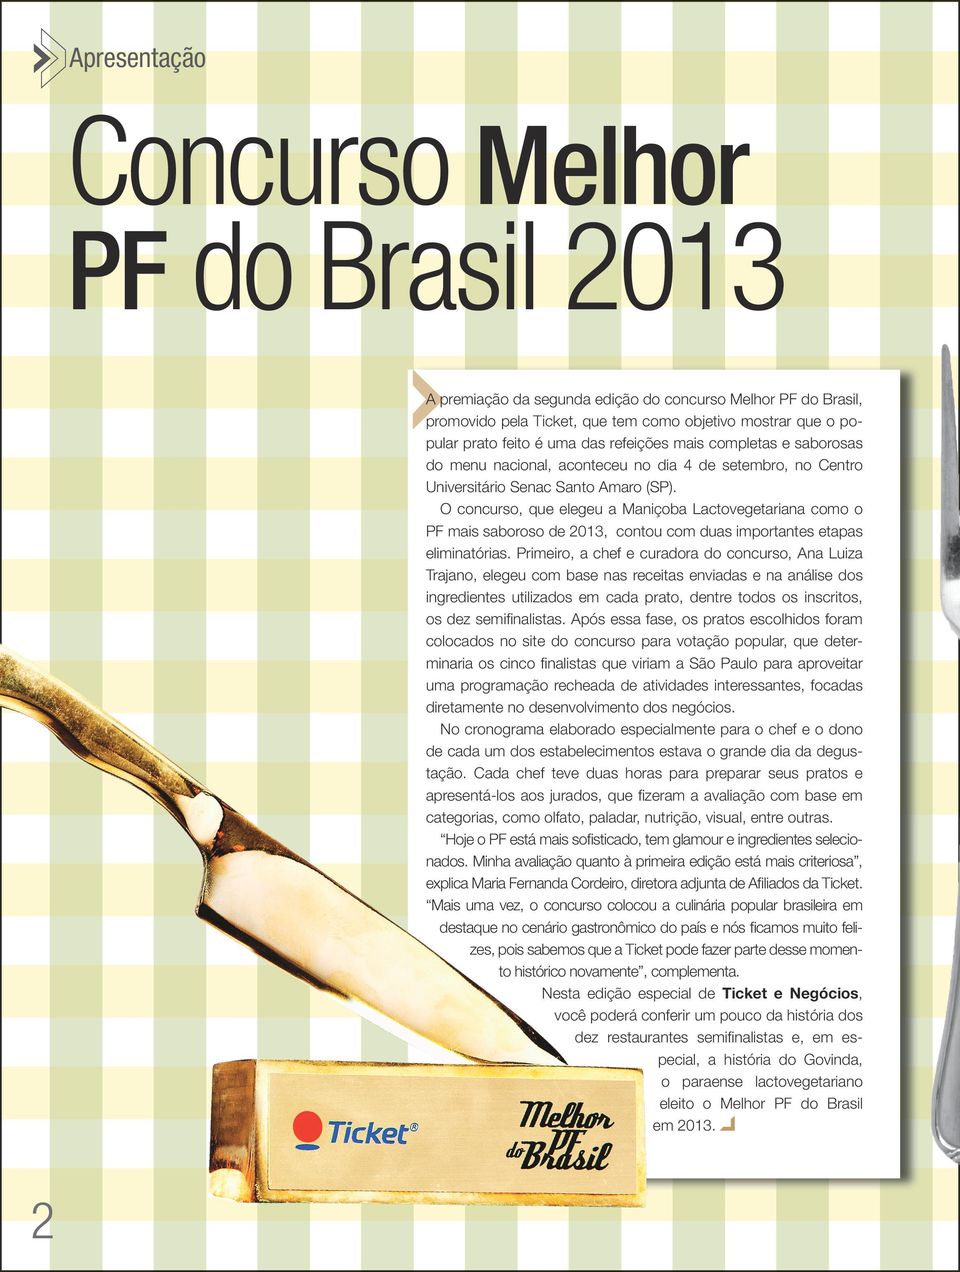 O concurso, que elegeu a Maniçoba Lactovegetariana como o PF mais saboroso de 2013, contou com duas importantes etapas eliminatórias.